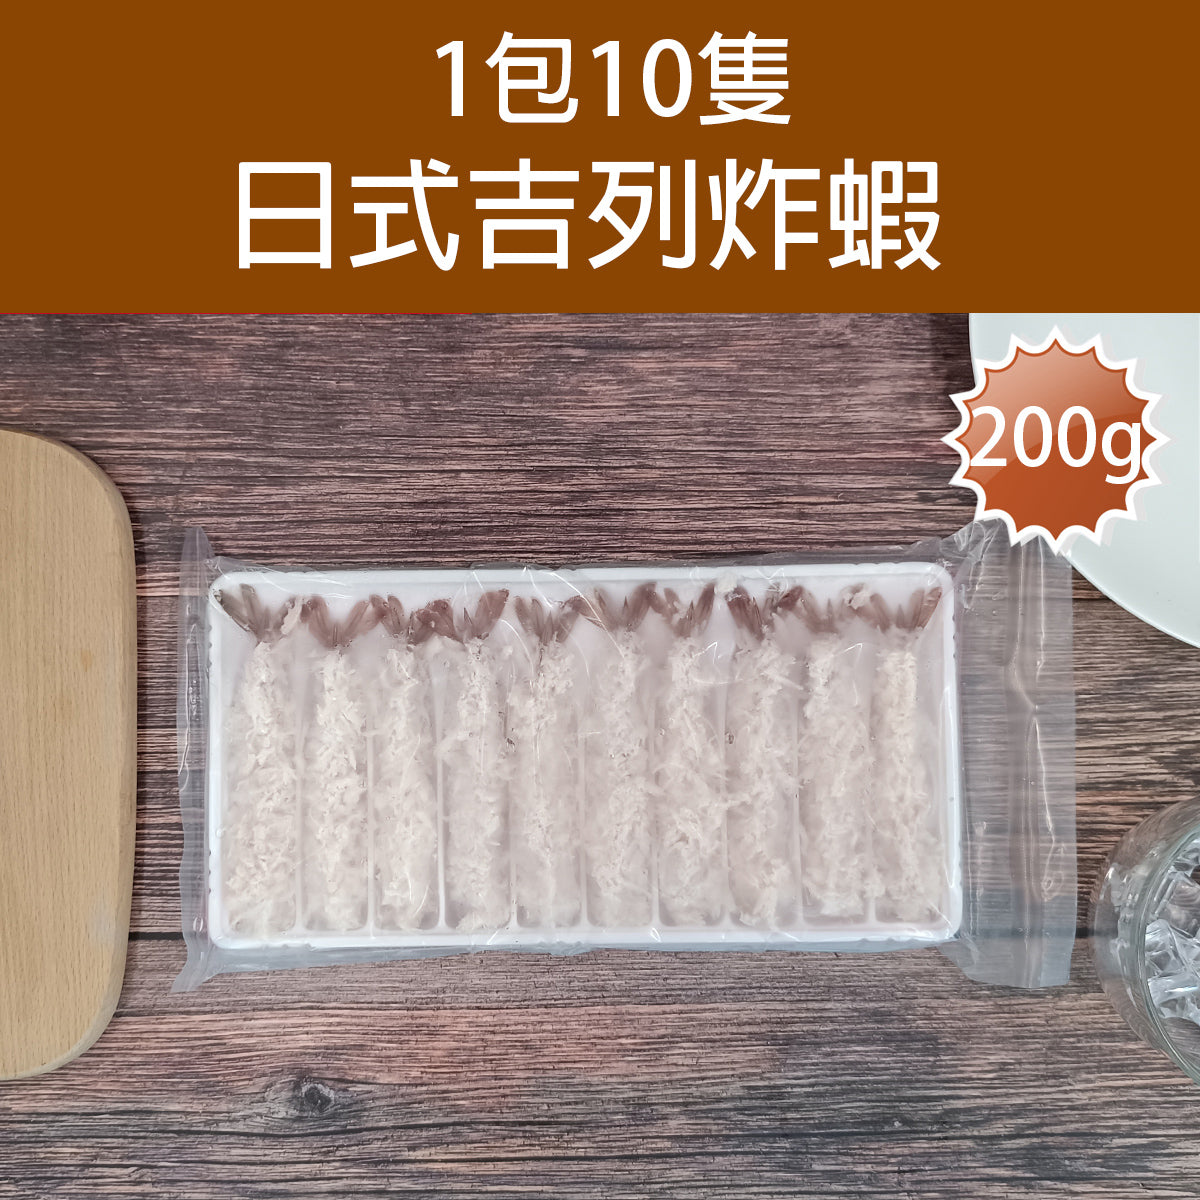 吉列炸蝦 10件裝 約200g (急凍-18°C)